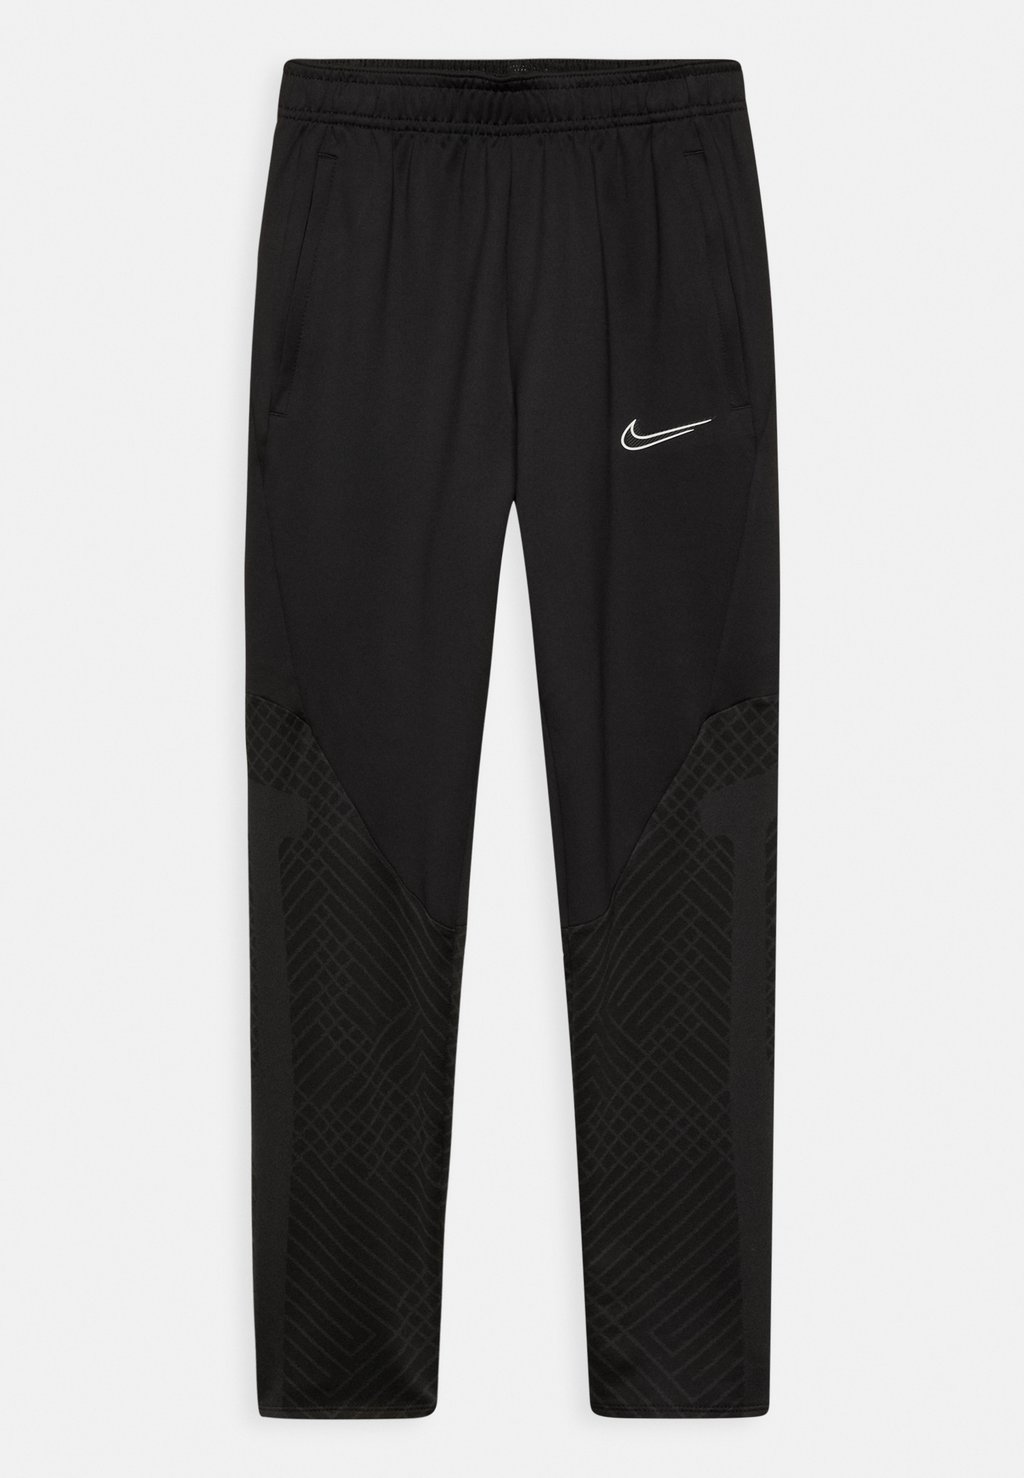 Спортивные брюки Y Nk Df Strk Pant Kpz Nike, цвет black/black/anthracite/white